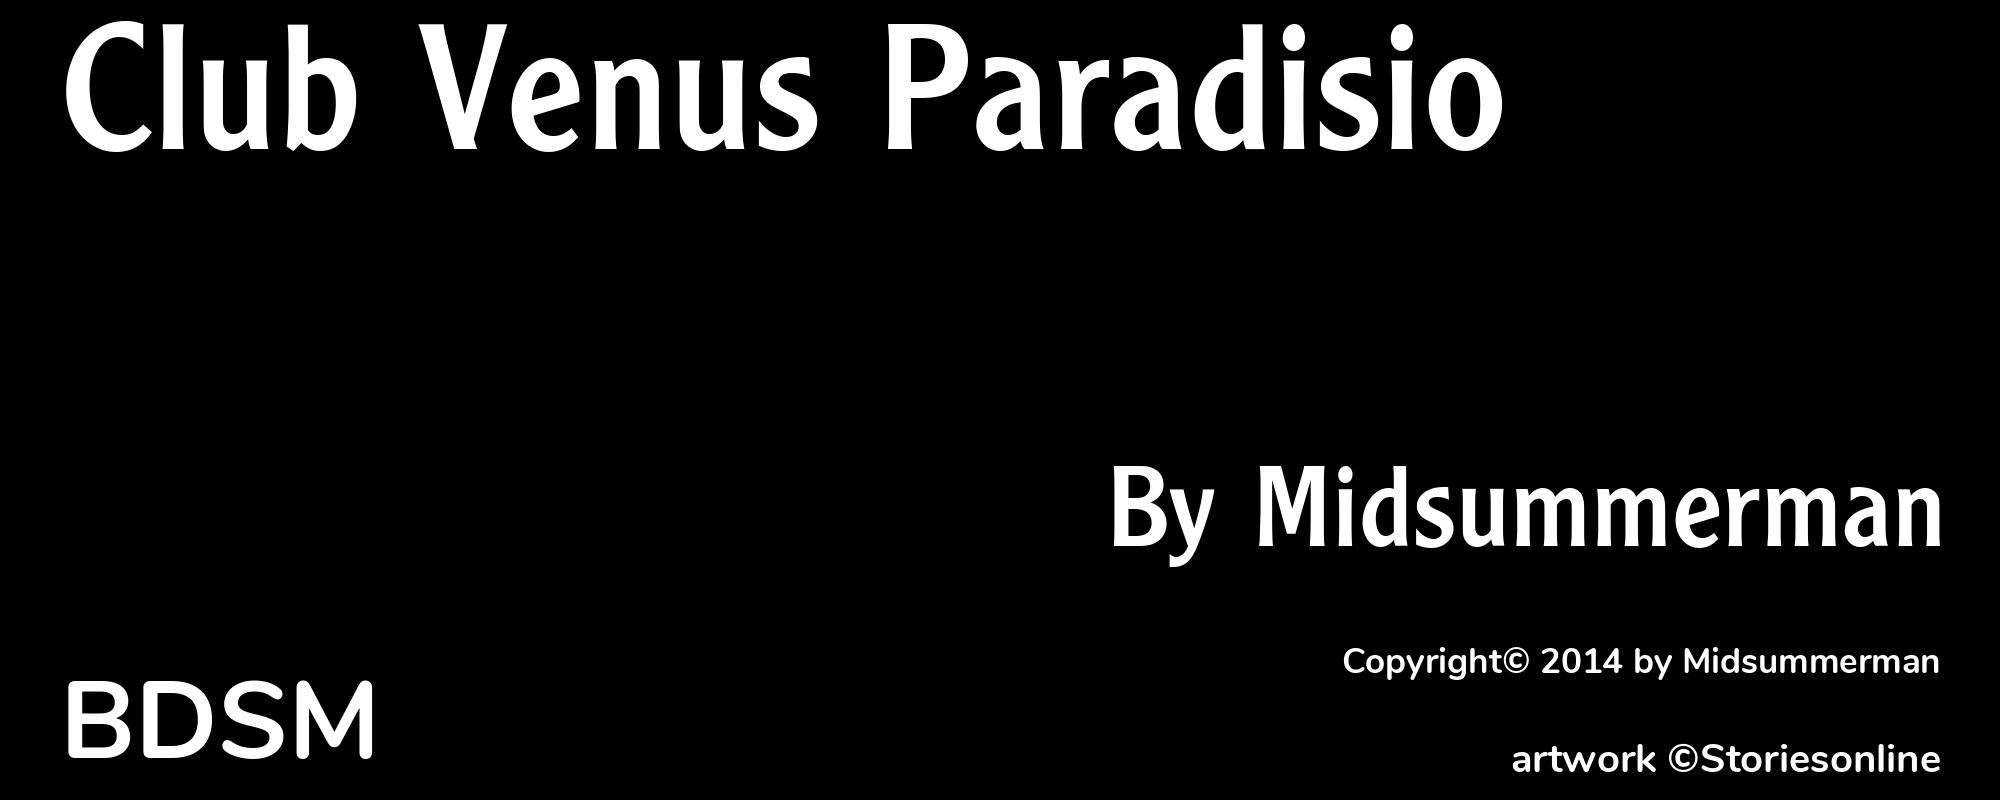 Club Venus Paradisio - Cover